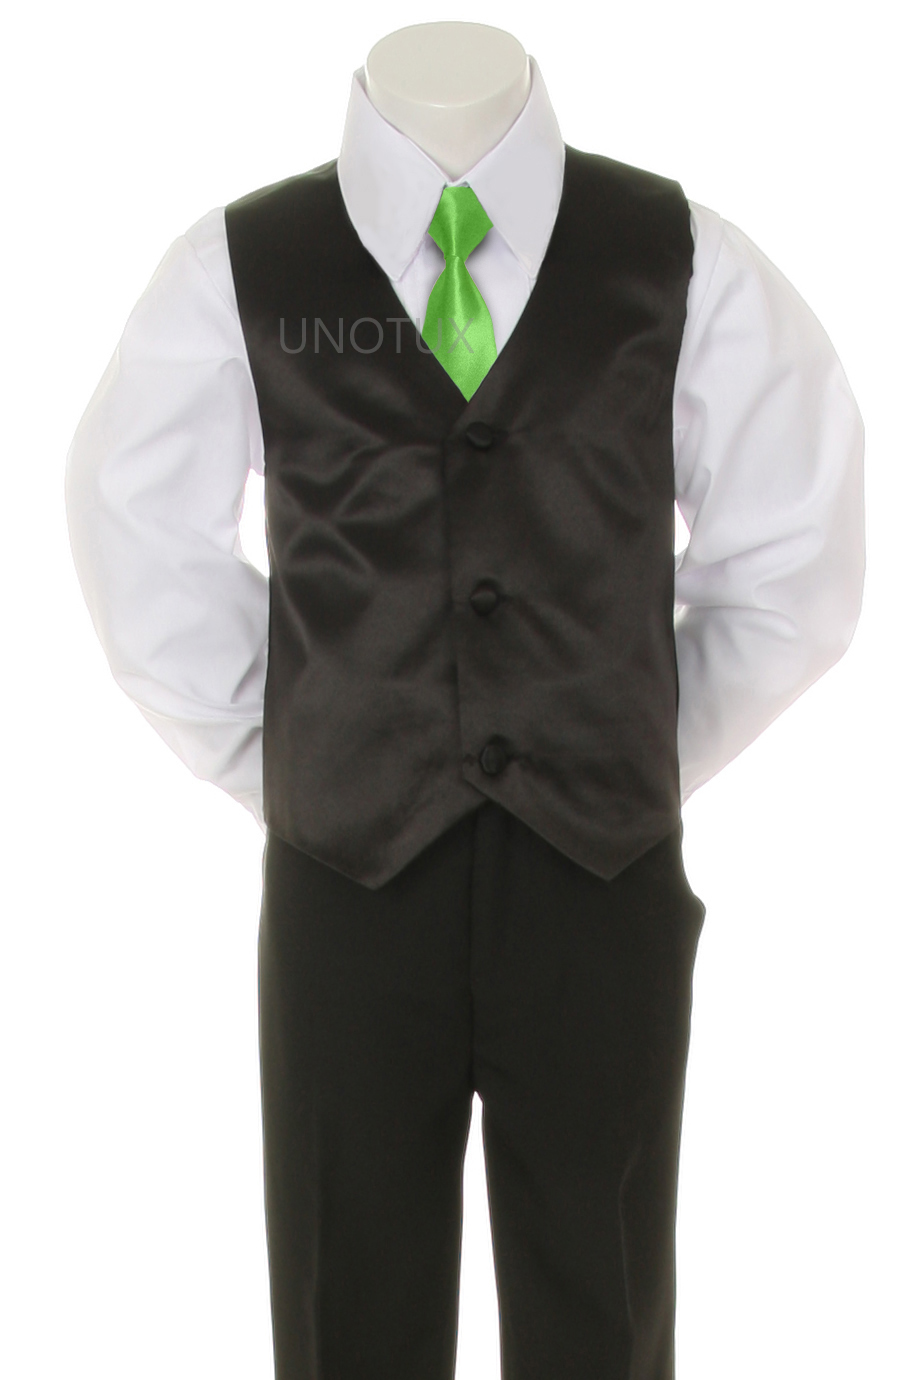 Unotux S M L XL 2T 3T 4T Lime Satin Necktie + Baby Infant Toddler Black Formal Wedding Party Boy Suit Satin Tuxedo 6pc Set